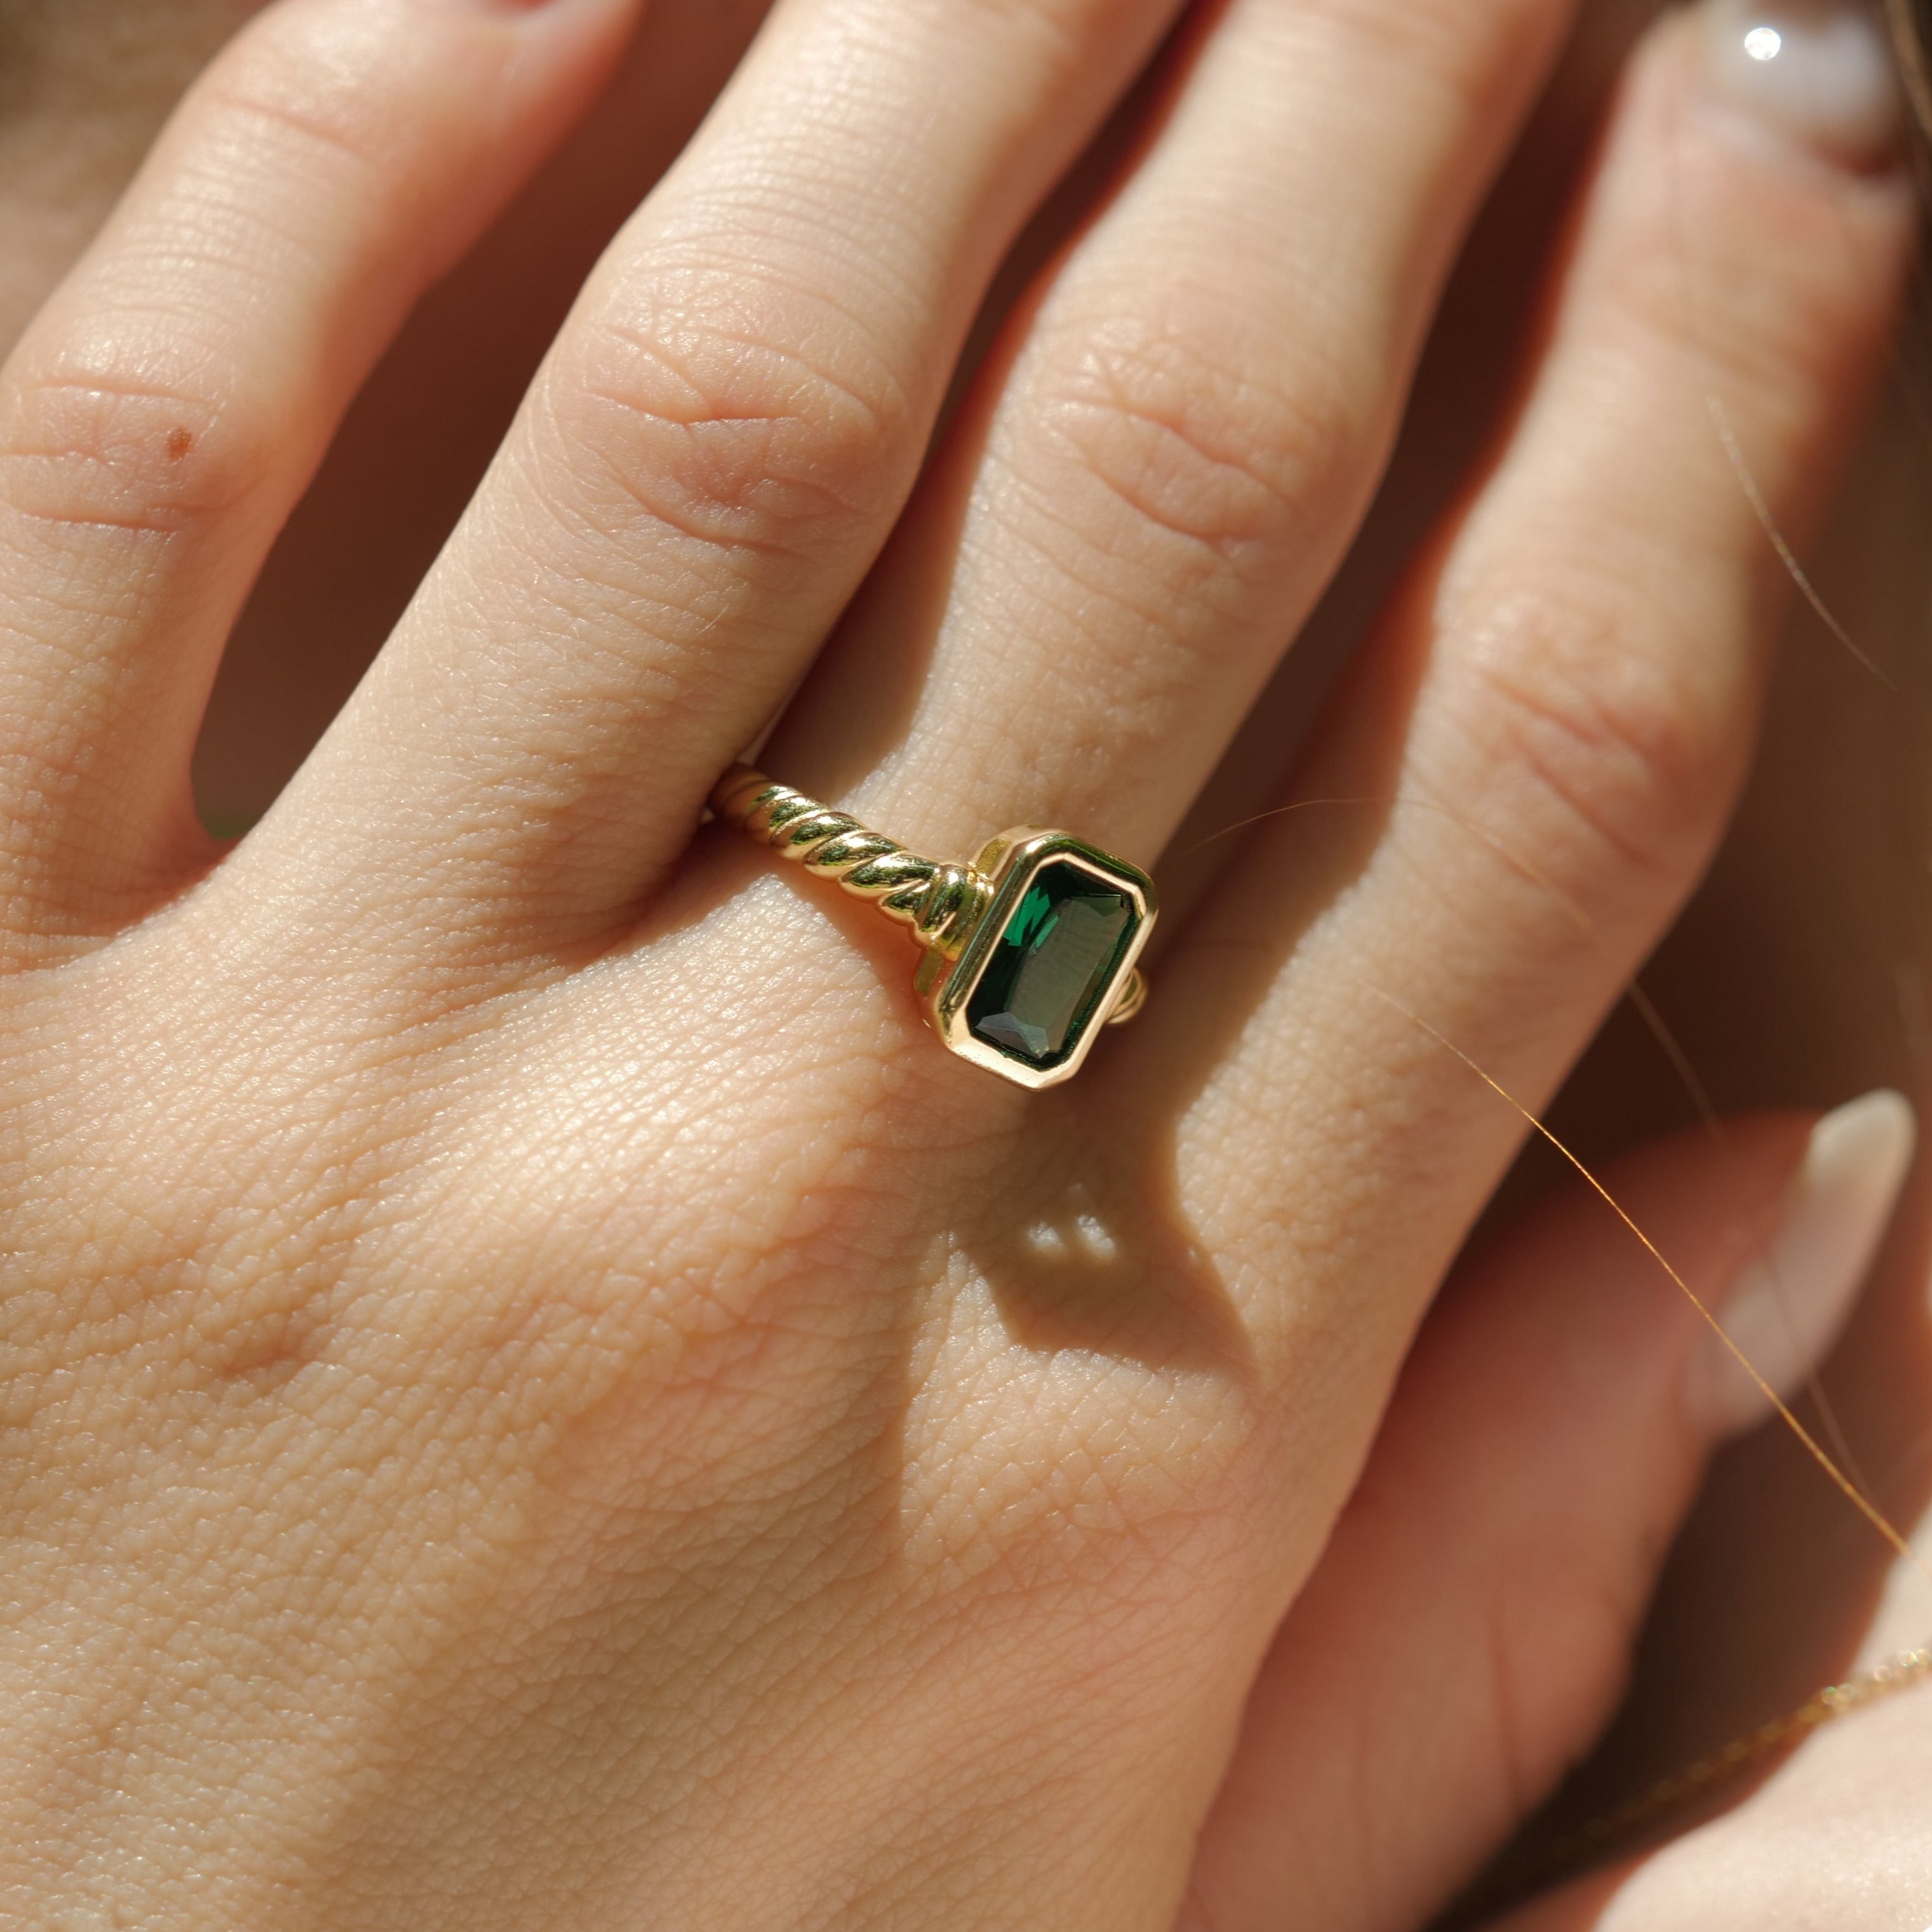 Novella Green Ring